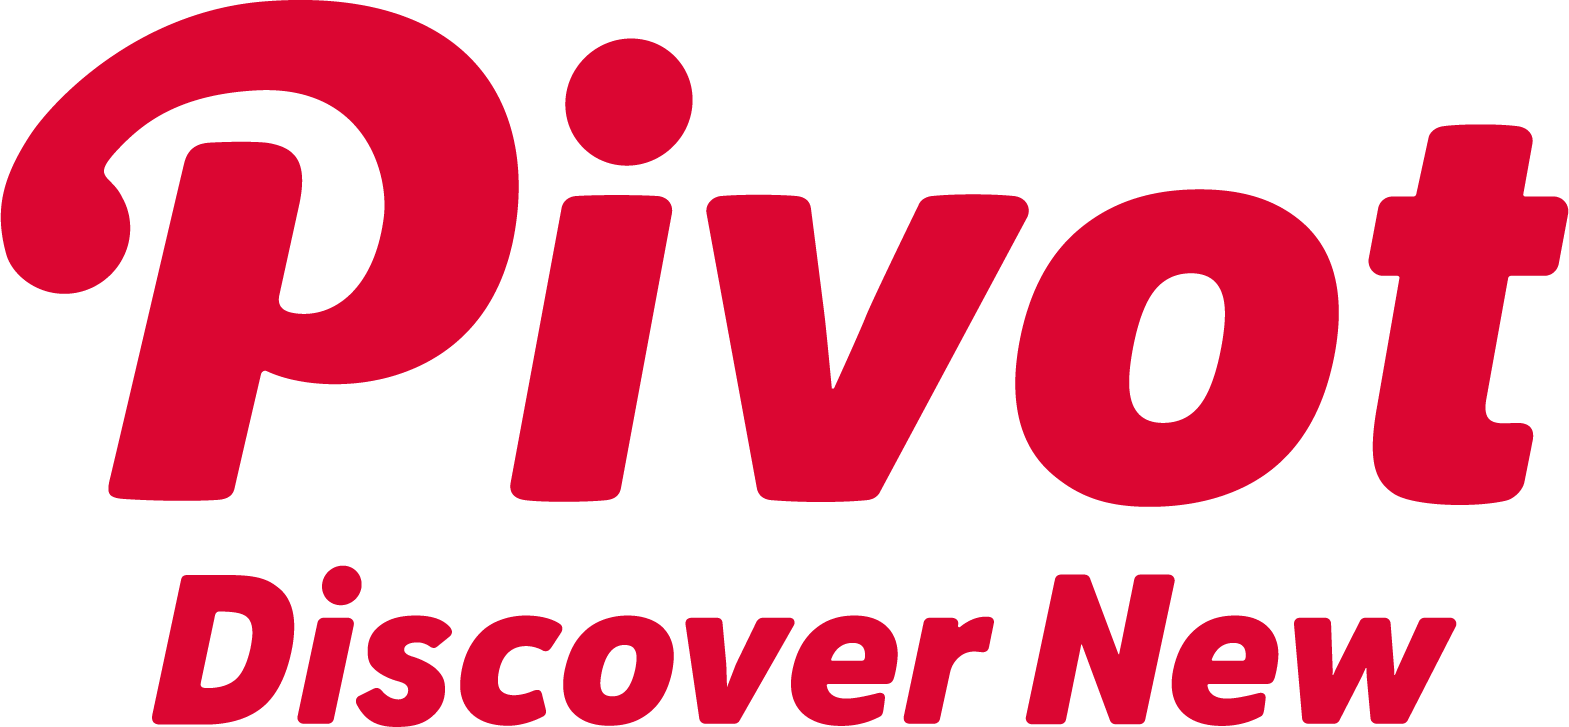 PIVOT Discover New